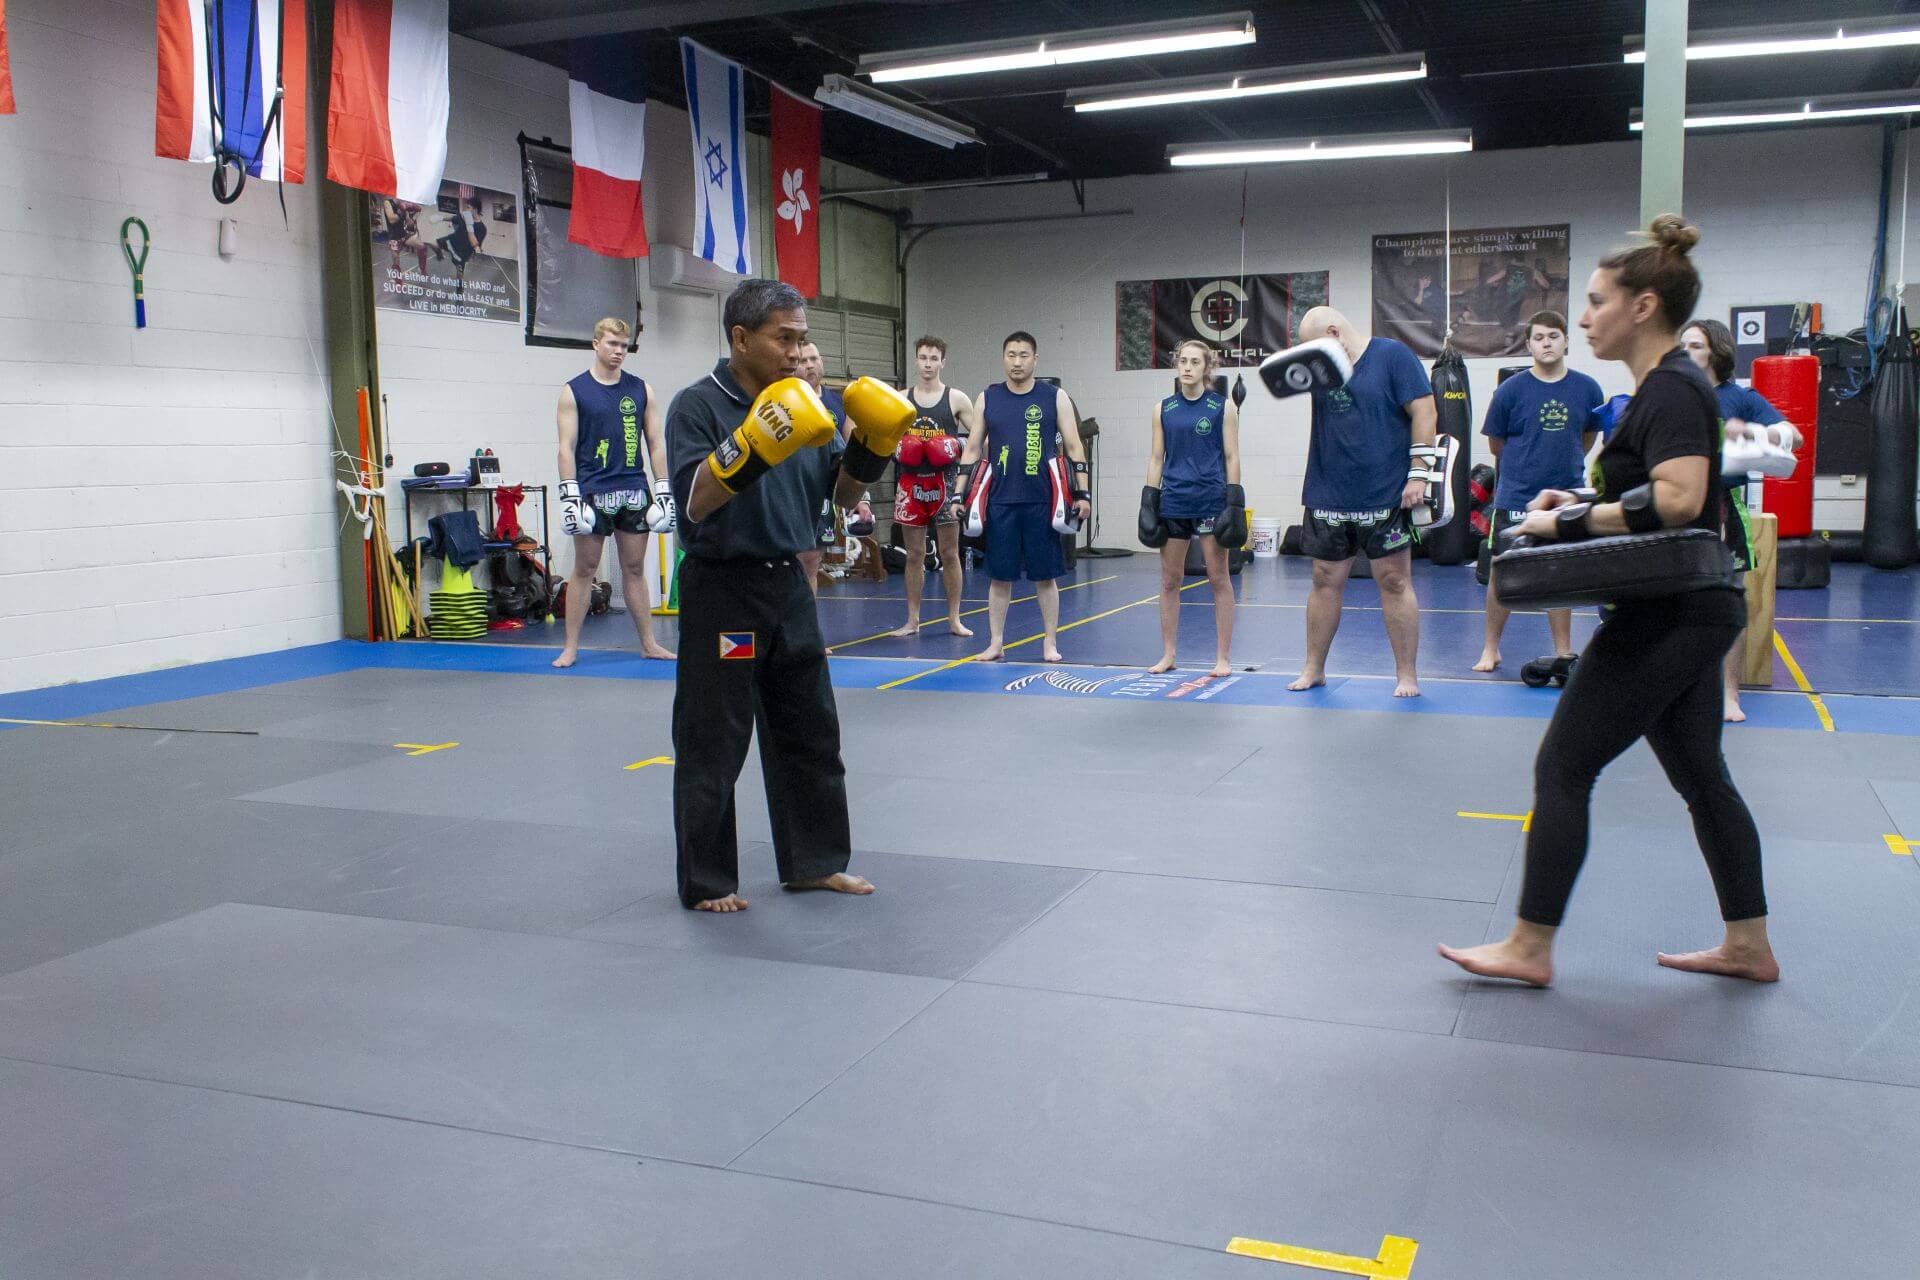 Joe Cargado teaching martial arts